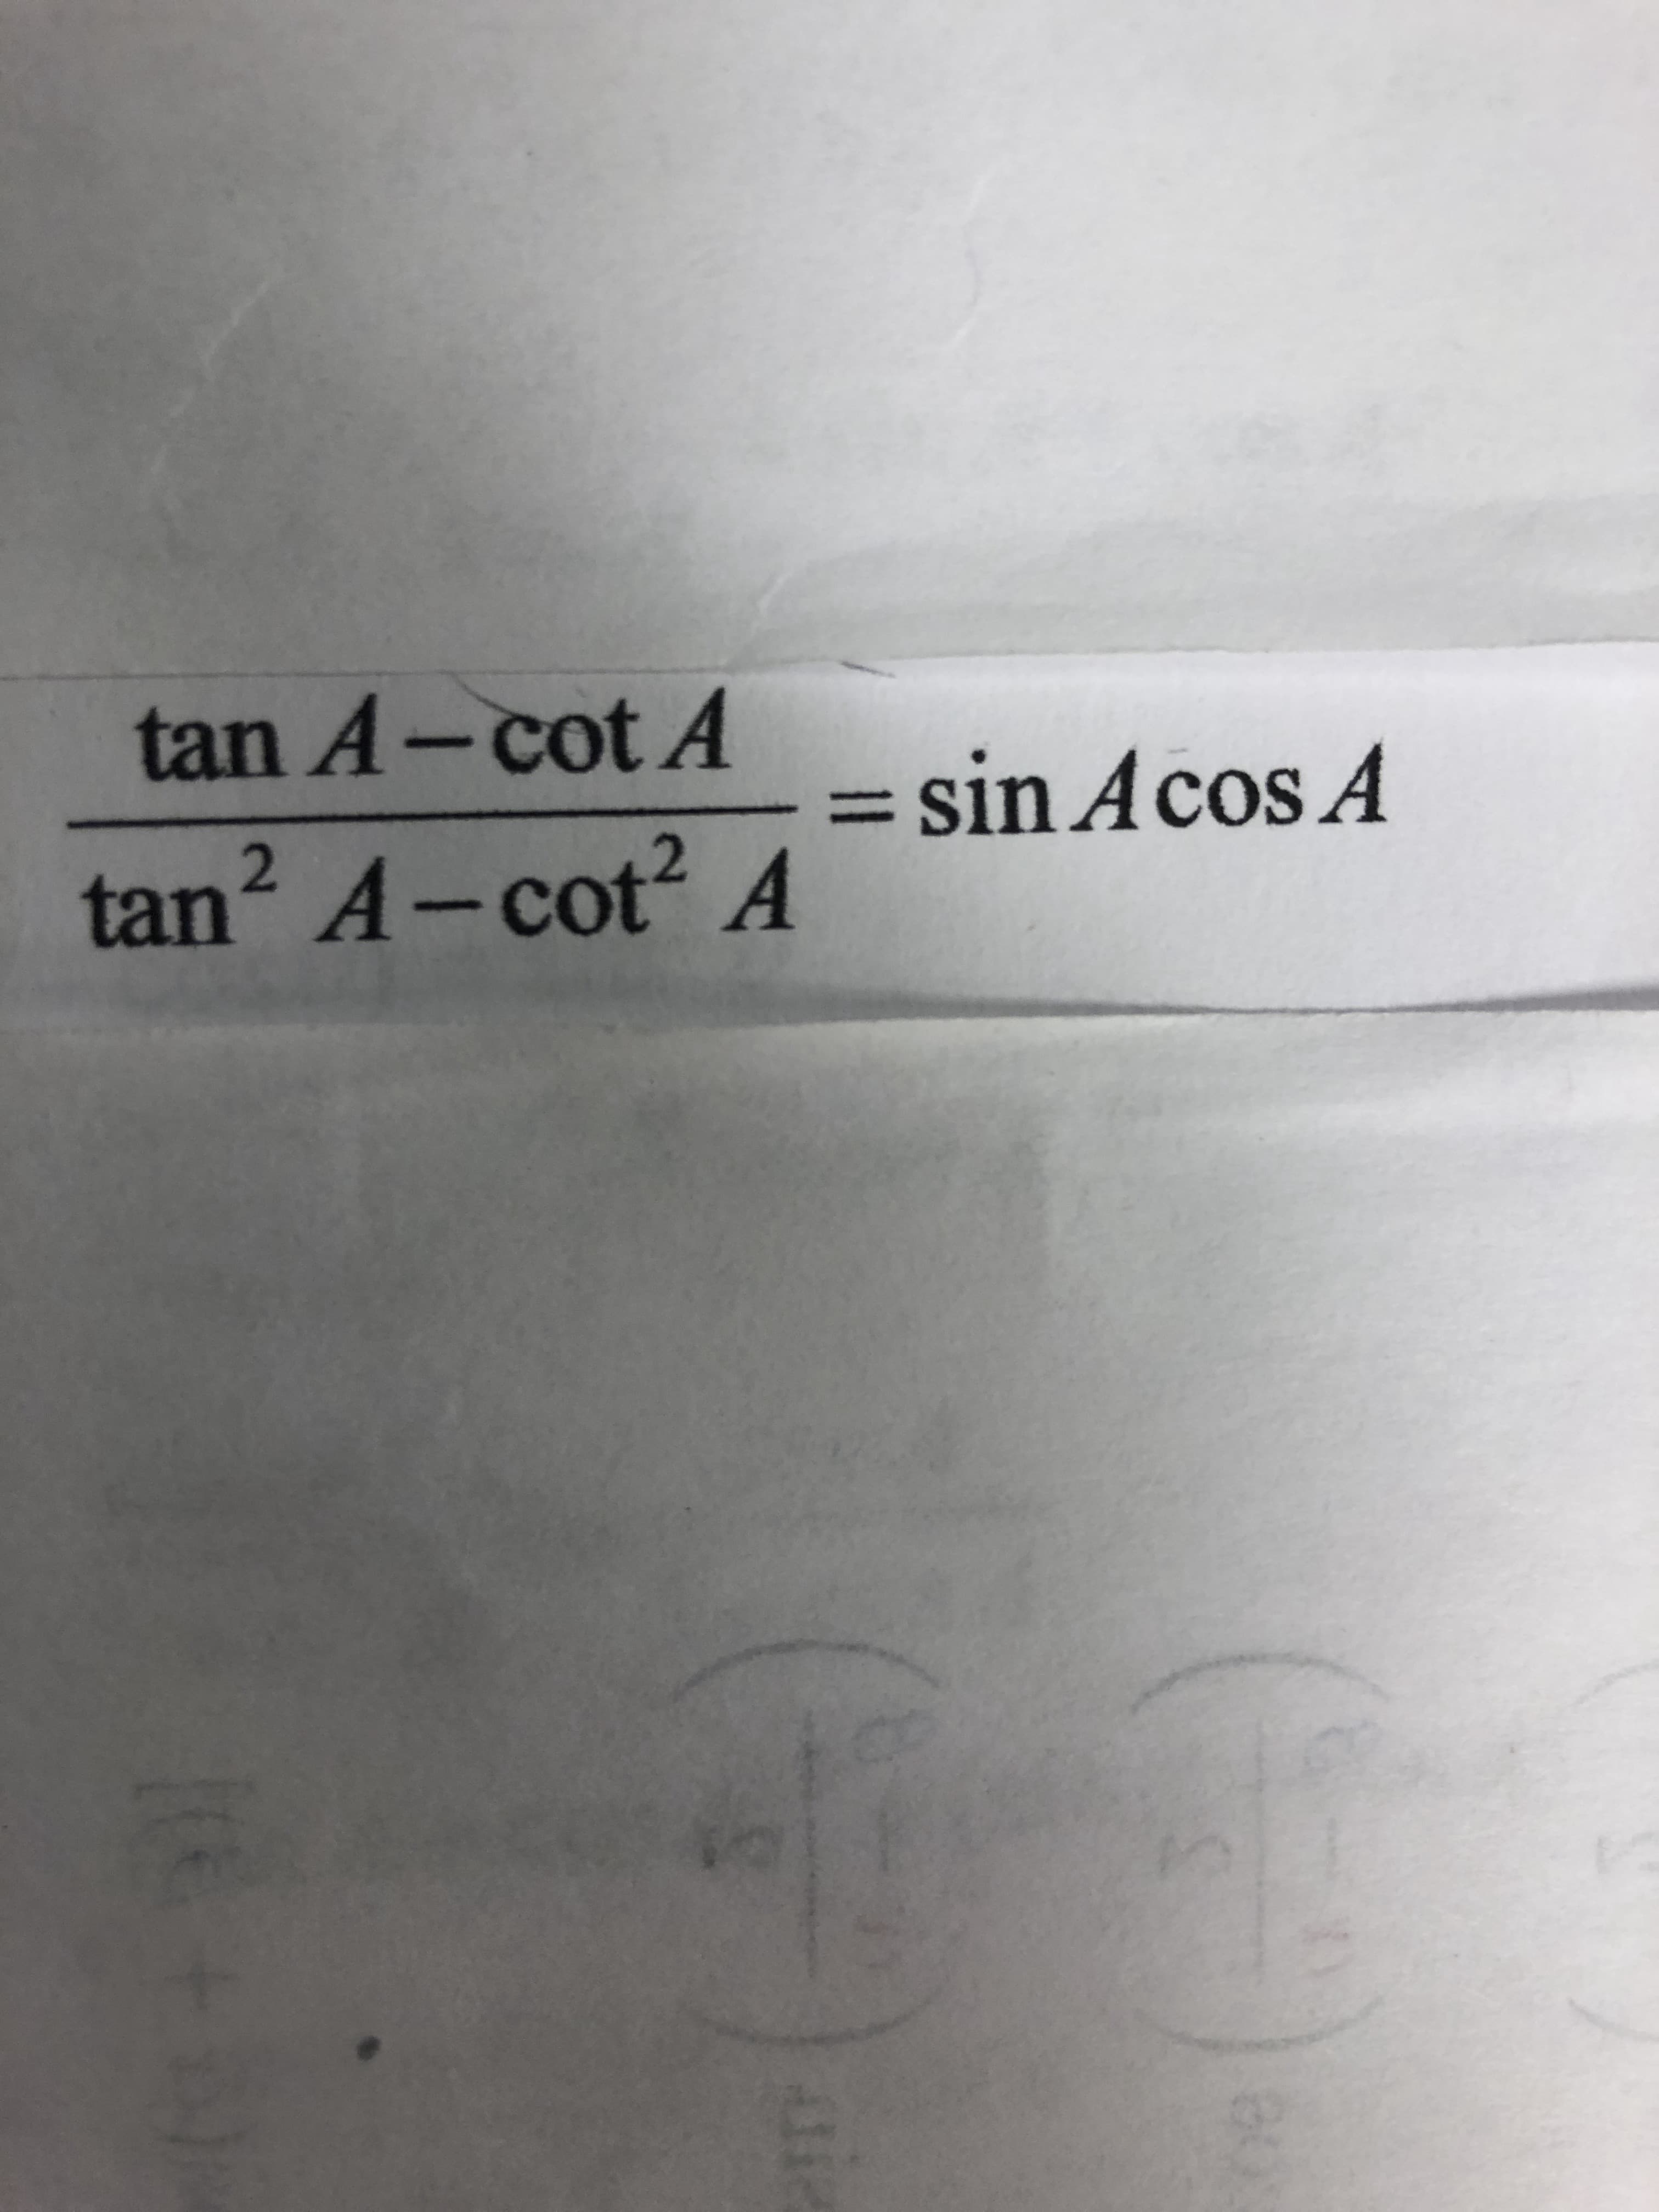 tan A-cot A
= sin Acos A
%3D
tan? A-cot? A
2.
2.
